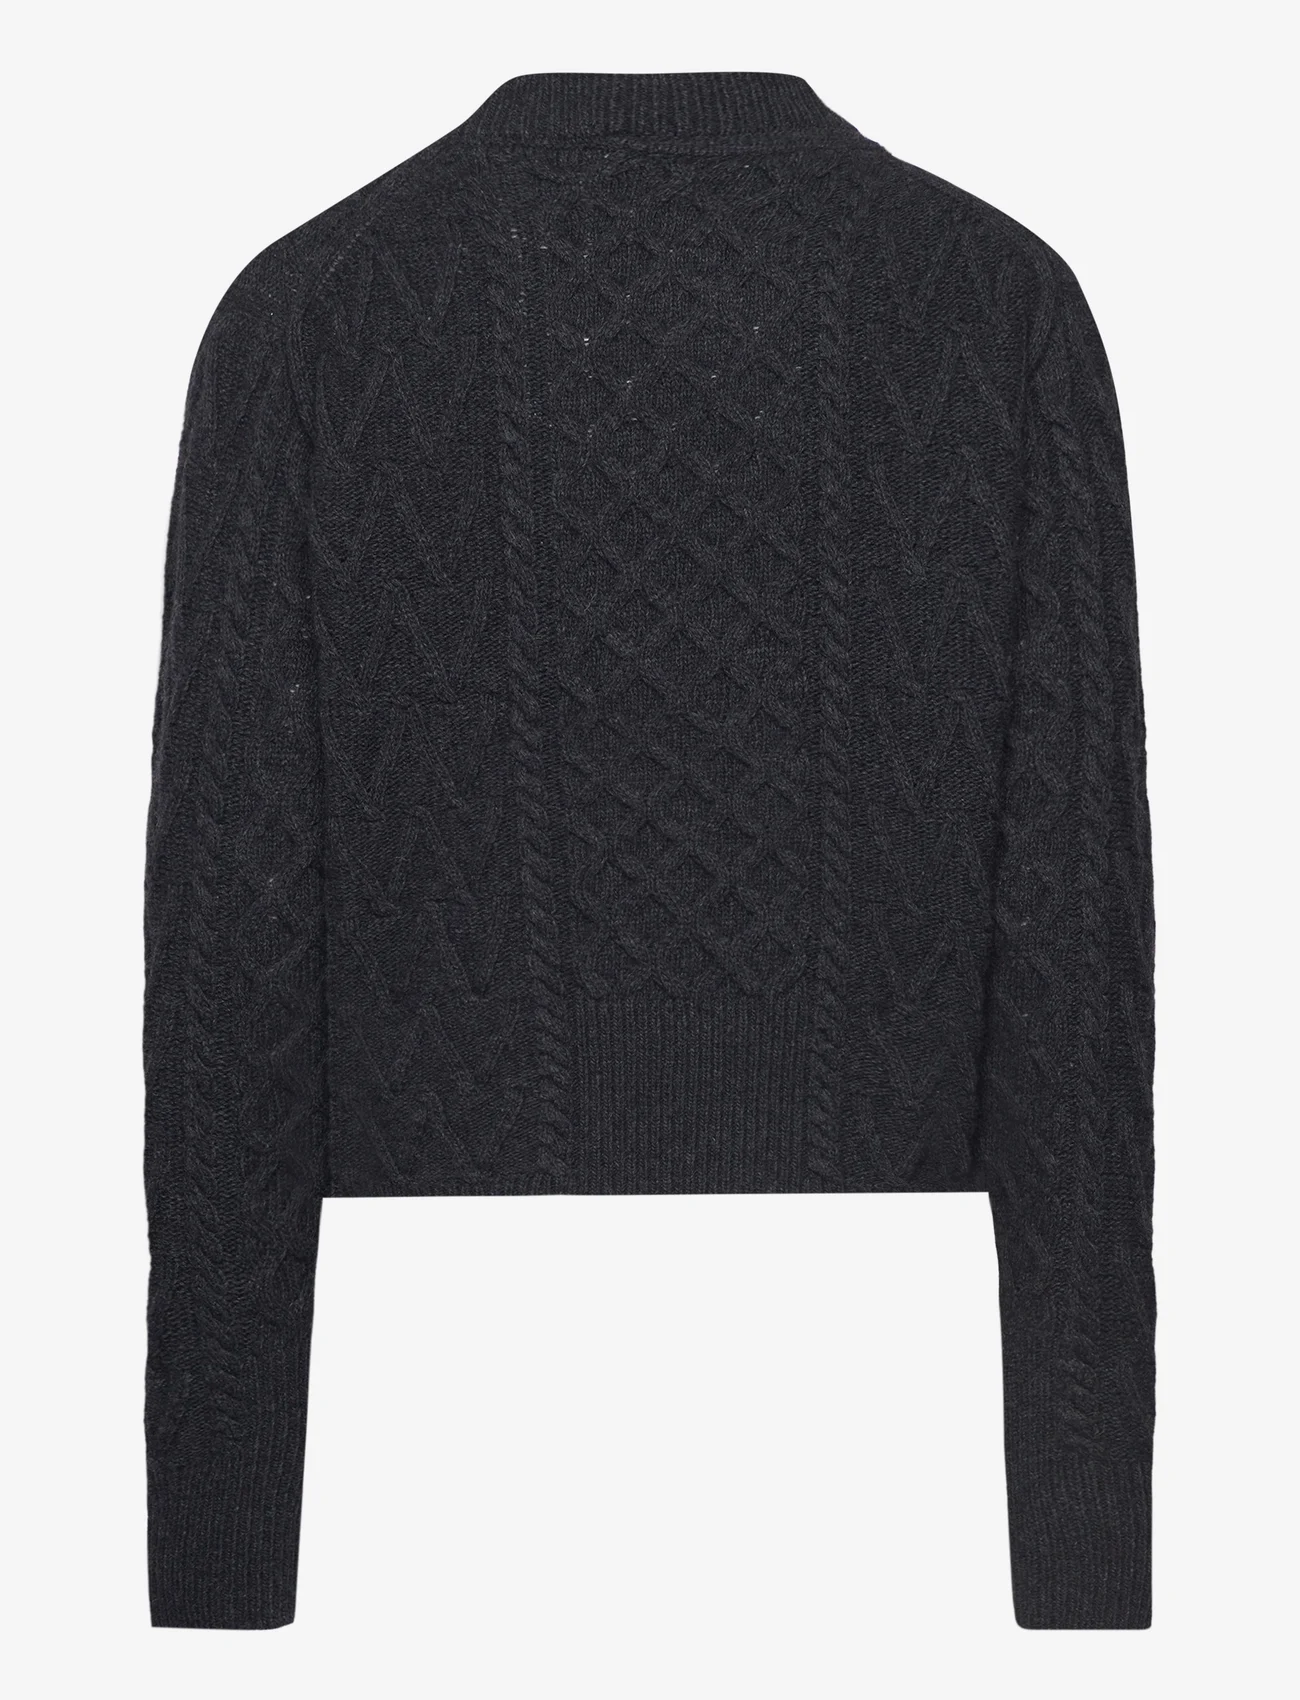 Wood Wood - Tania Aran knit jumper - jumpers - dark grey - 1